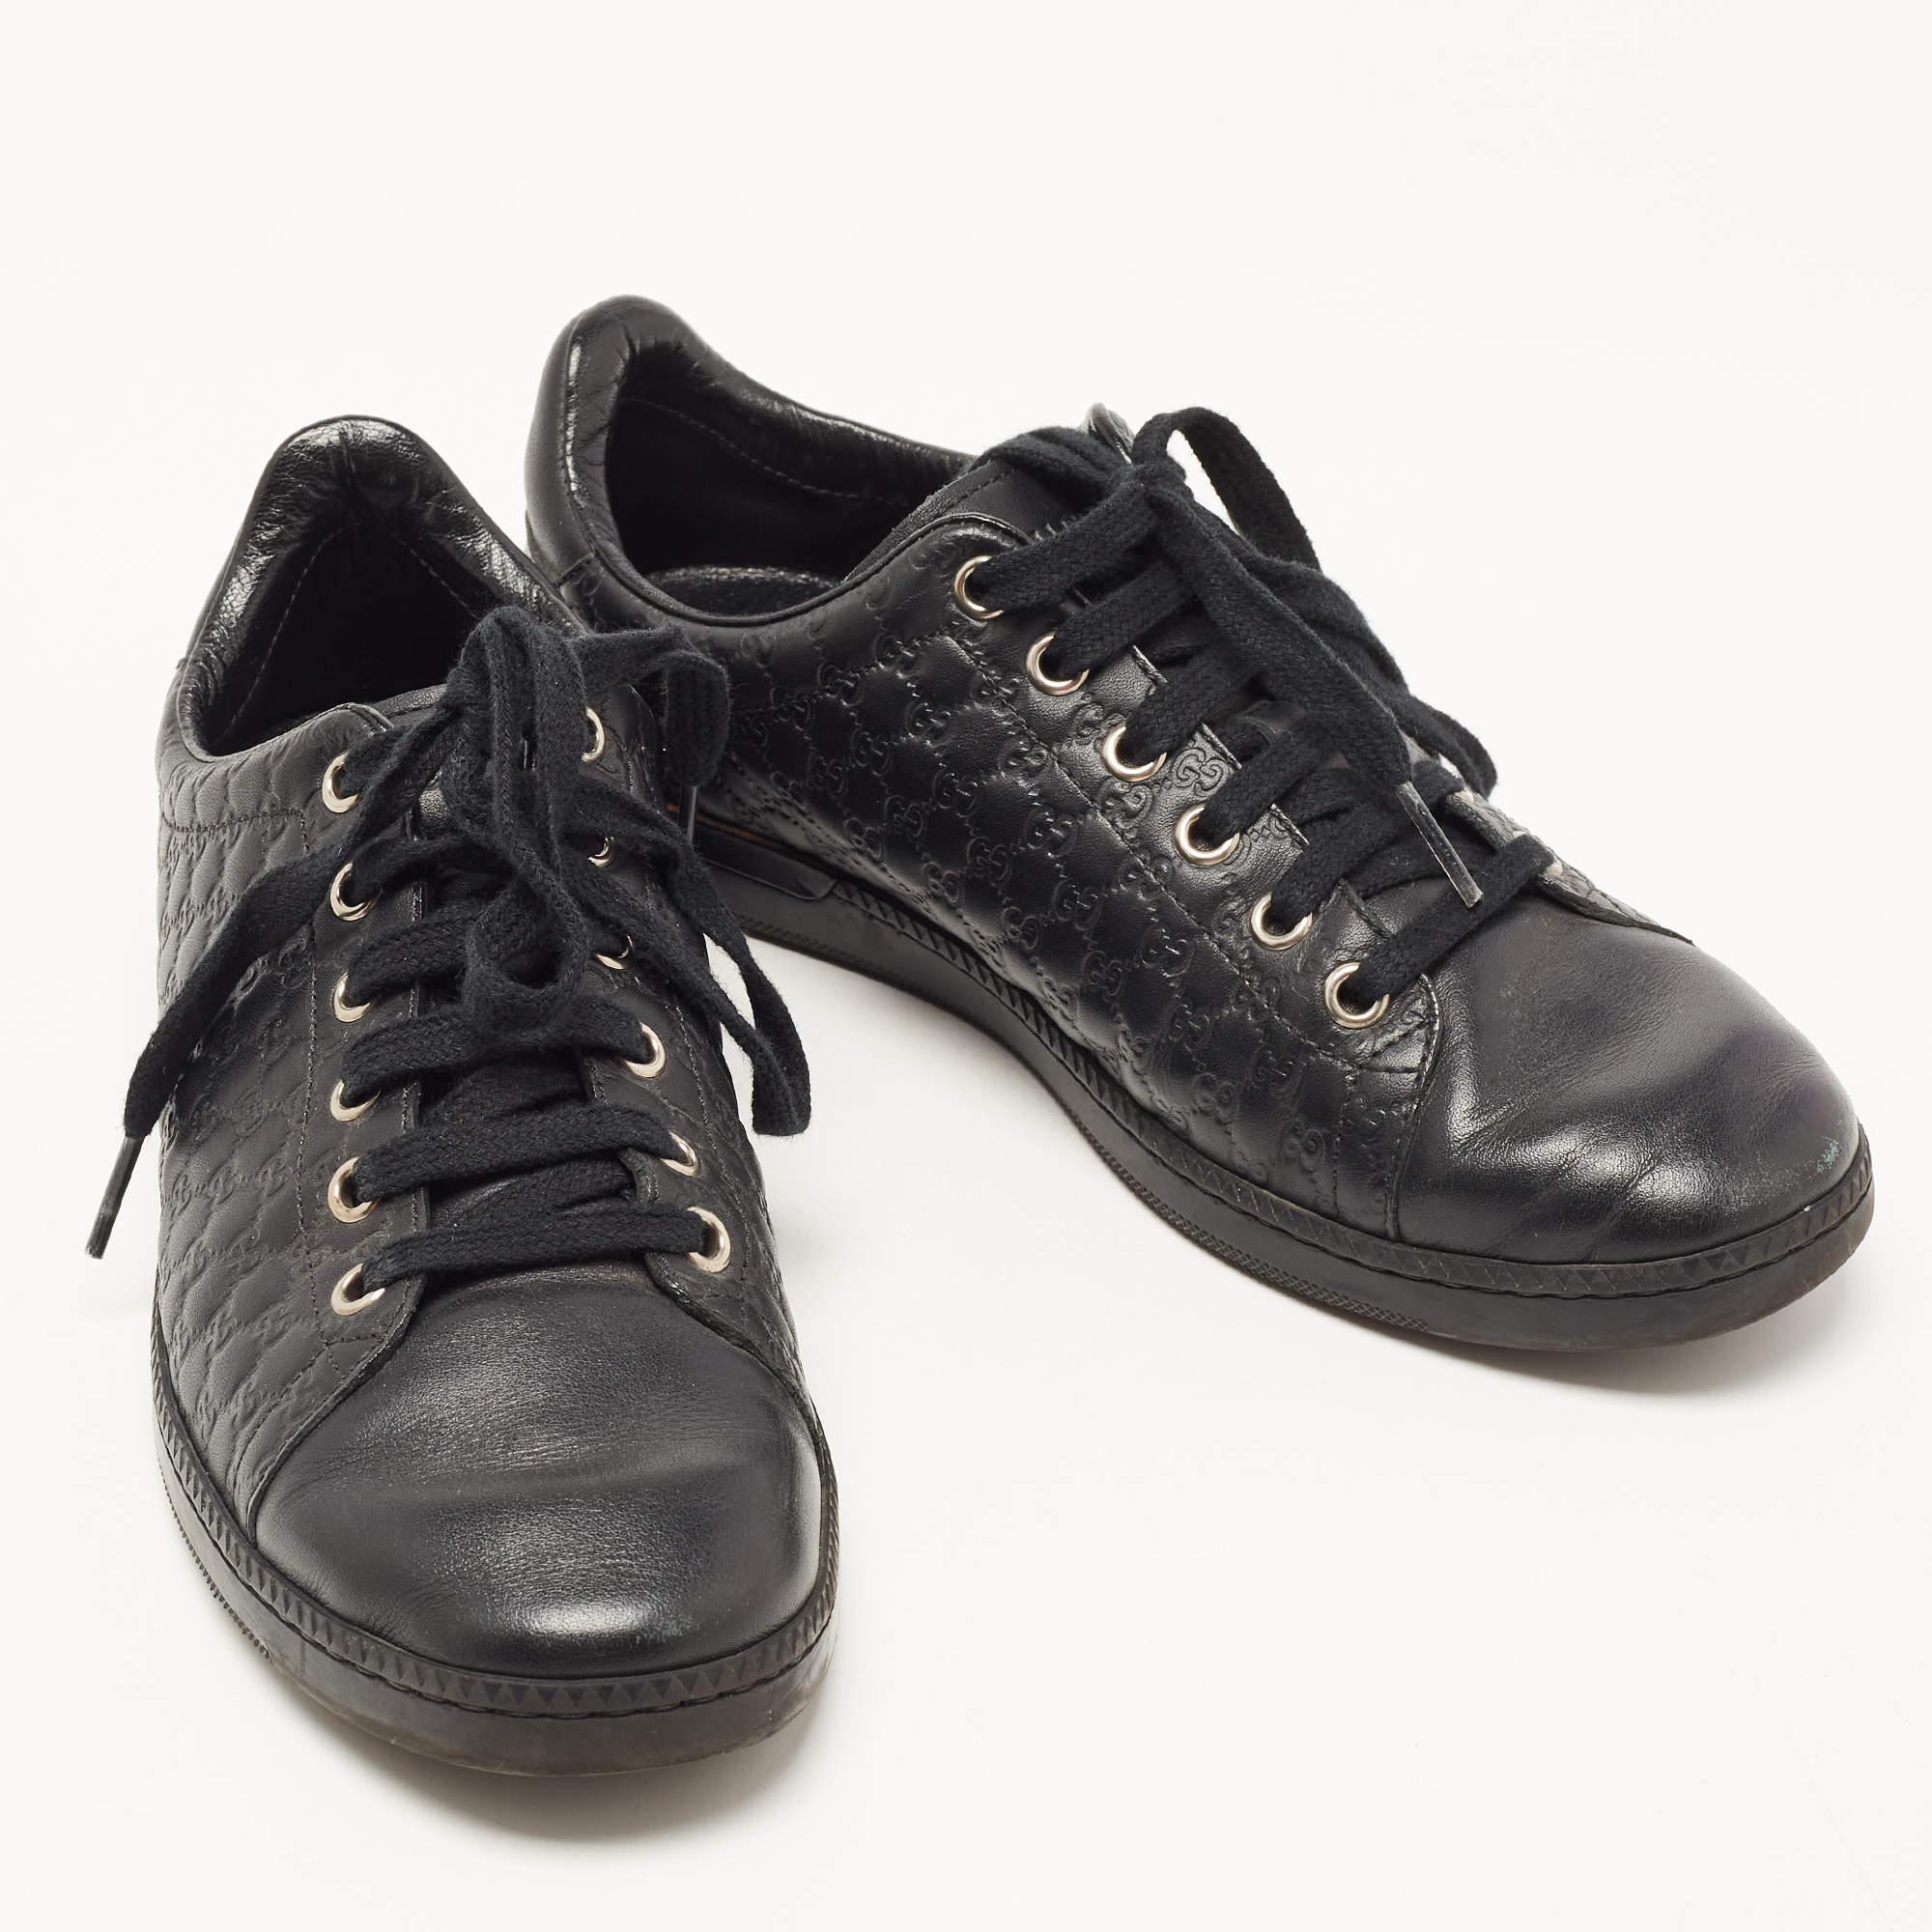 Gucci Black Microguccissima Leather Low Top Sneakers Size 35.5 In Good Condition For Sale In Dubai, Al Qouz 2